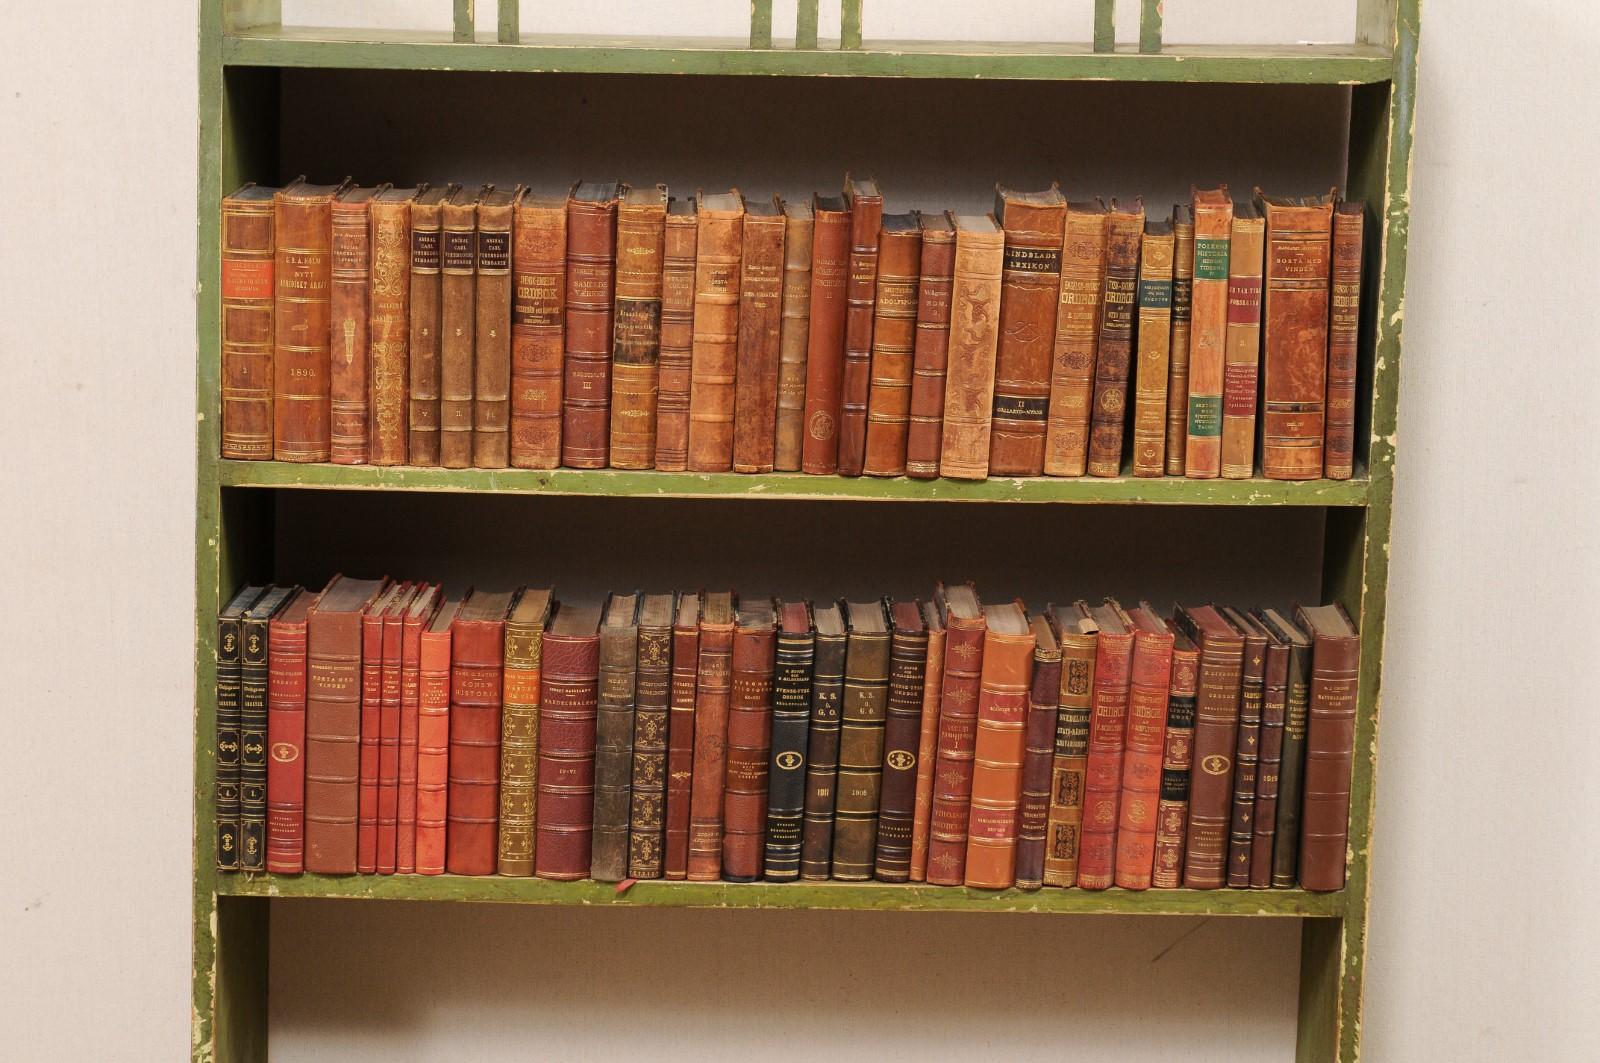 Une collection attrayante de 100 livres anciens suédois reliés en cuir. Cet ensemble de livres de littérature des années 1920 provenant de Suède est enveloppé dans des couvertures reliées en cuir, composées de différents tons riches et chauds et